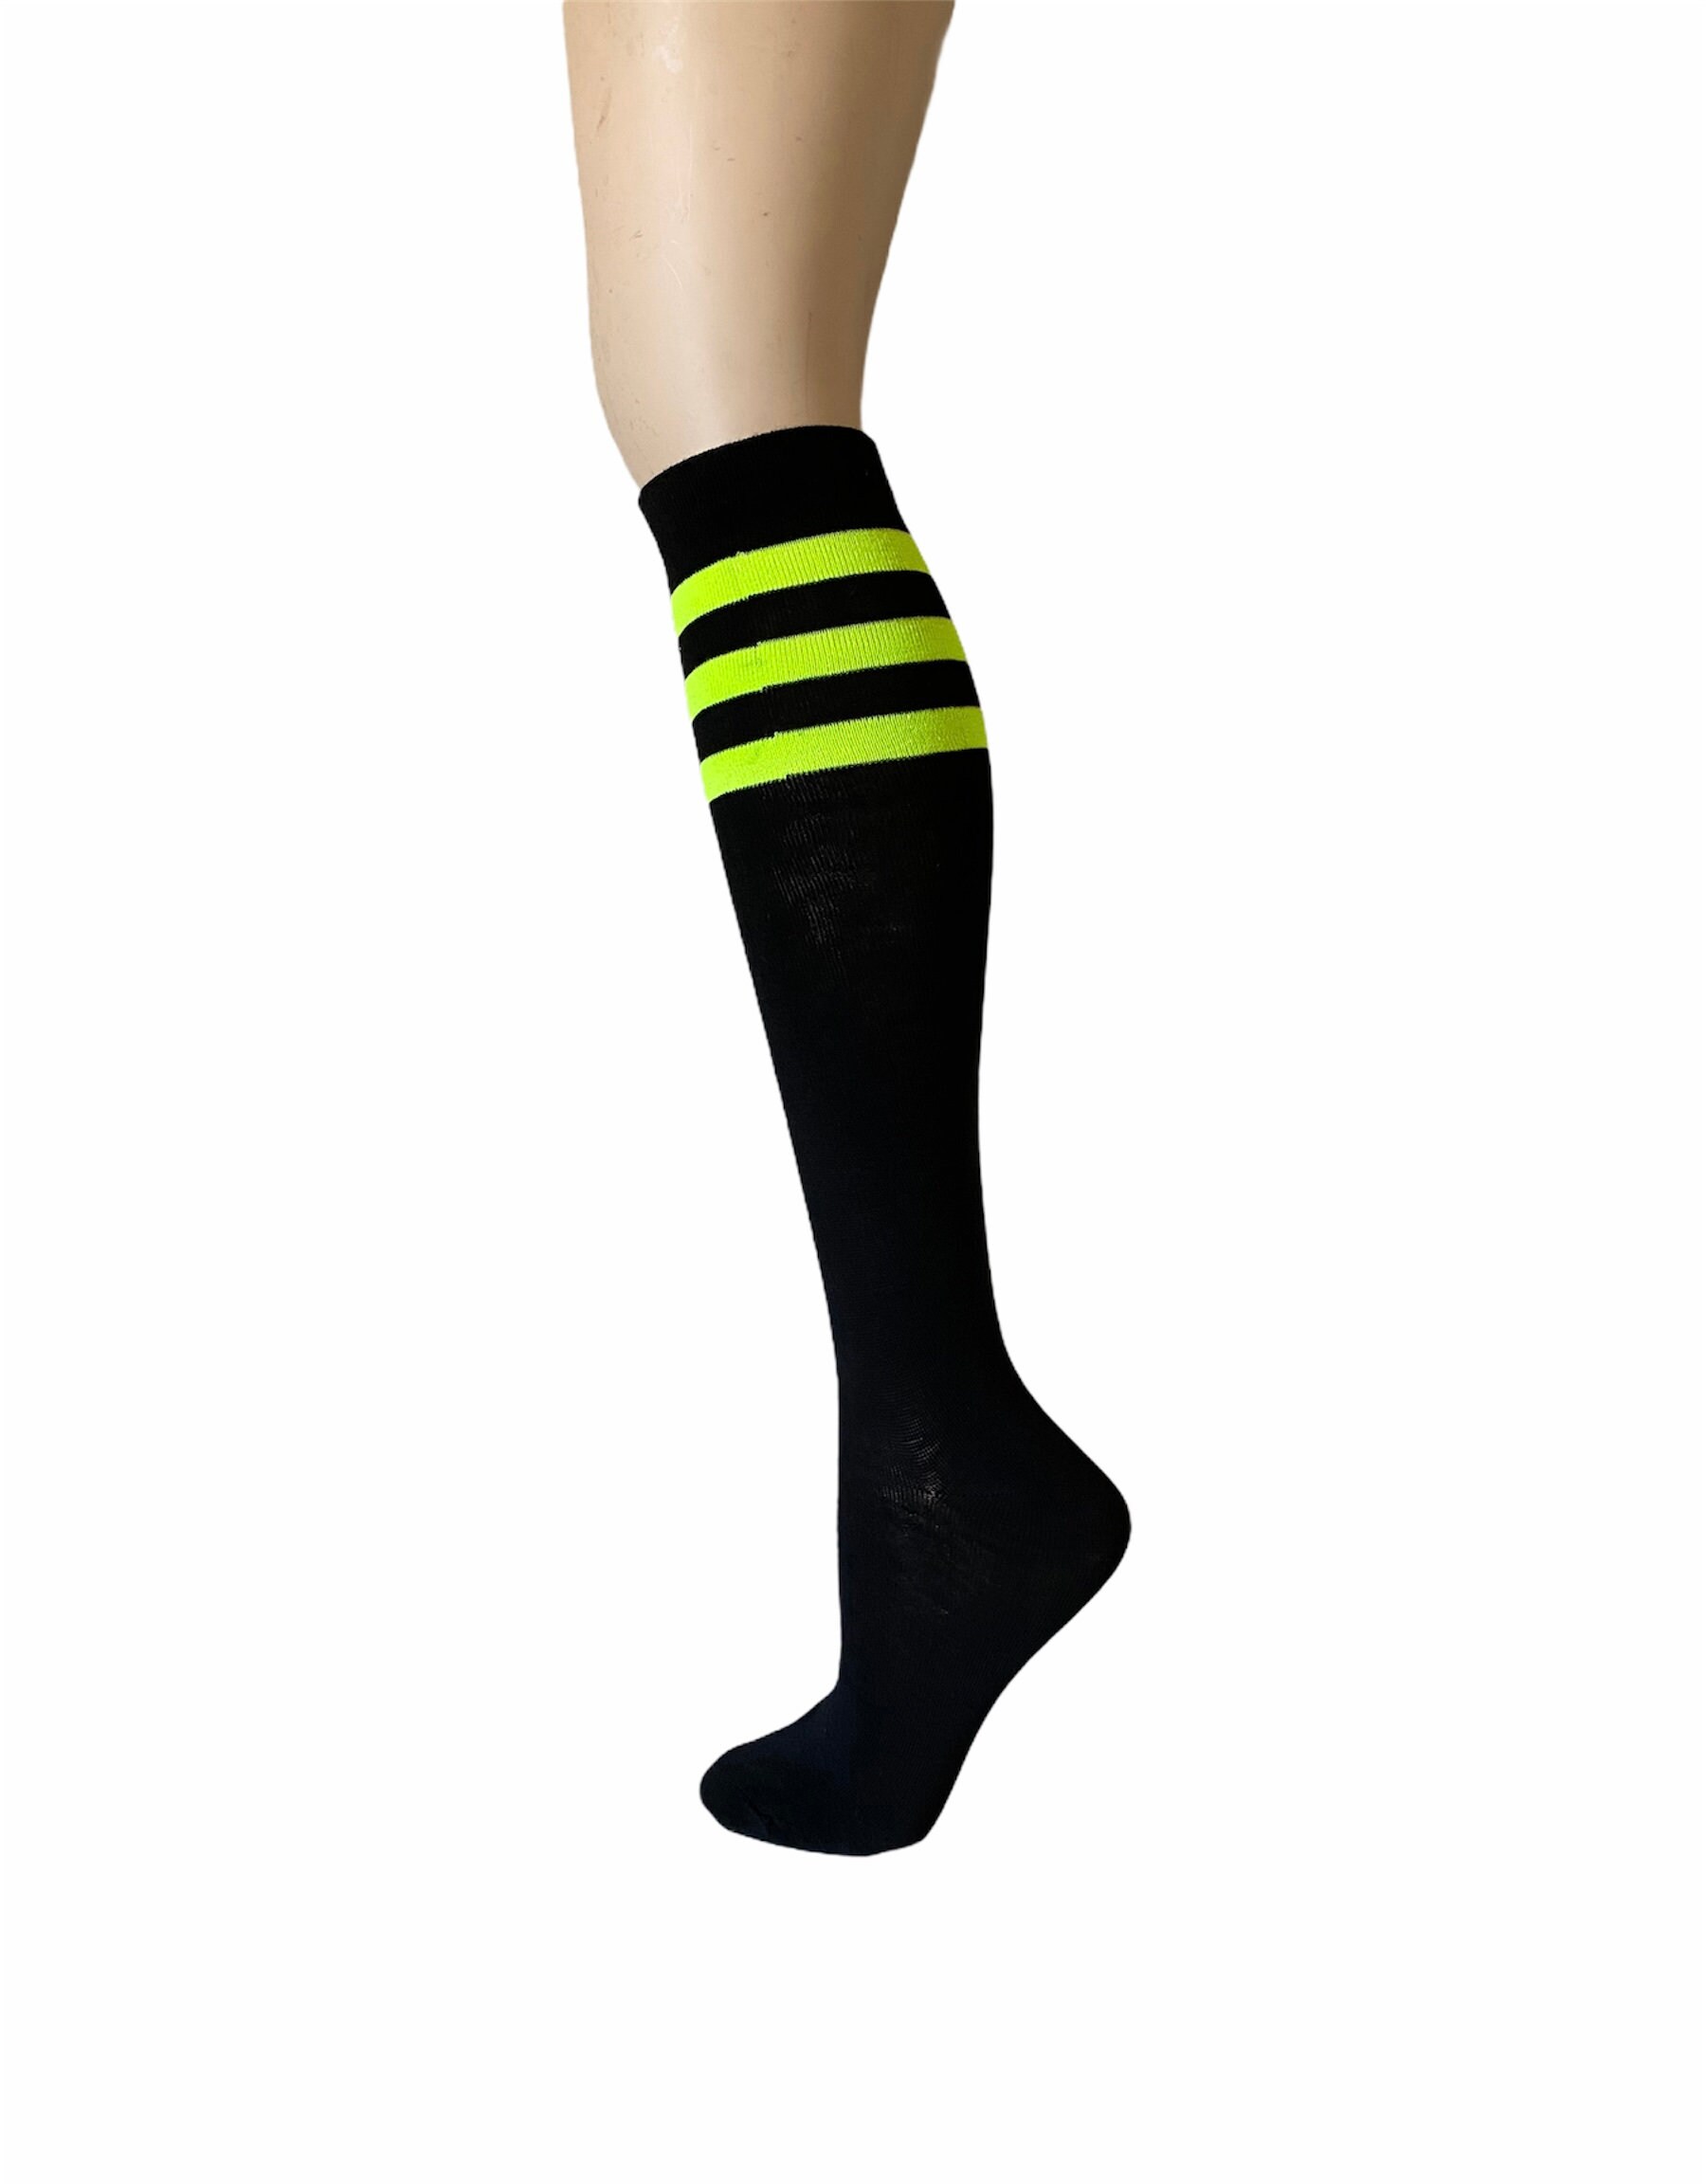 NEON RAINBOW KNEE Socks, Stripe Over the Knee Socks, Athletic Socks, 80s  Accessories -  Israel